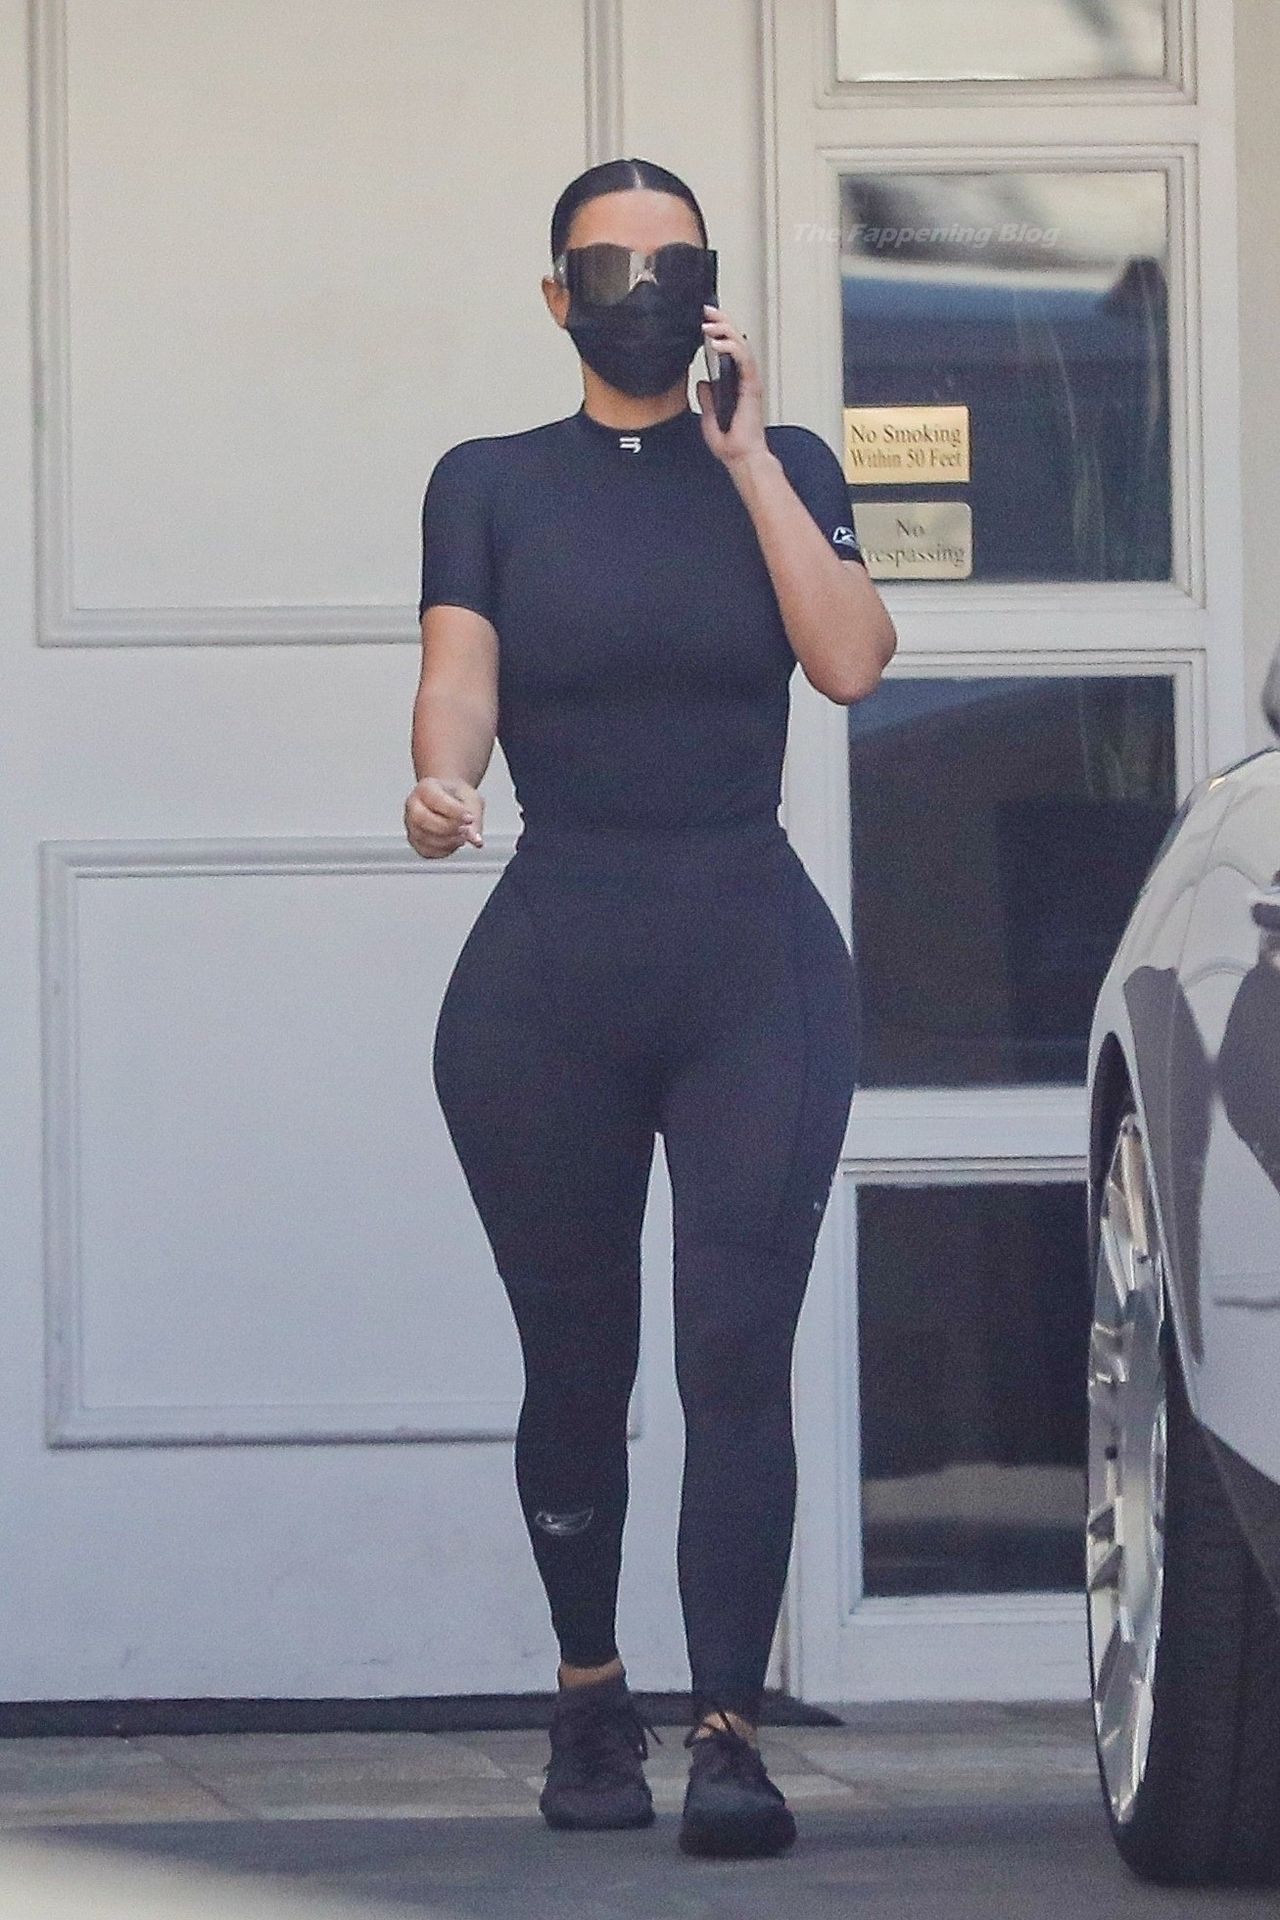 Kim-Kardashian-Sexy-The-Fappening-Blog-11.jpg